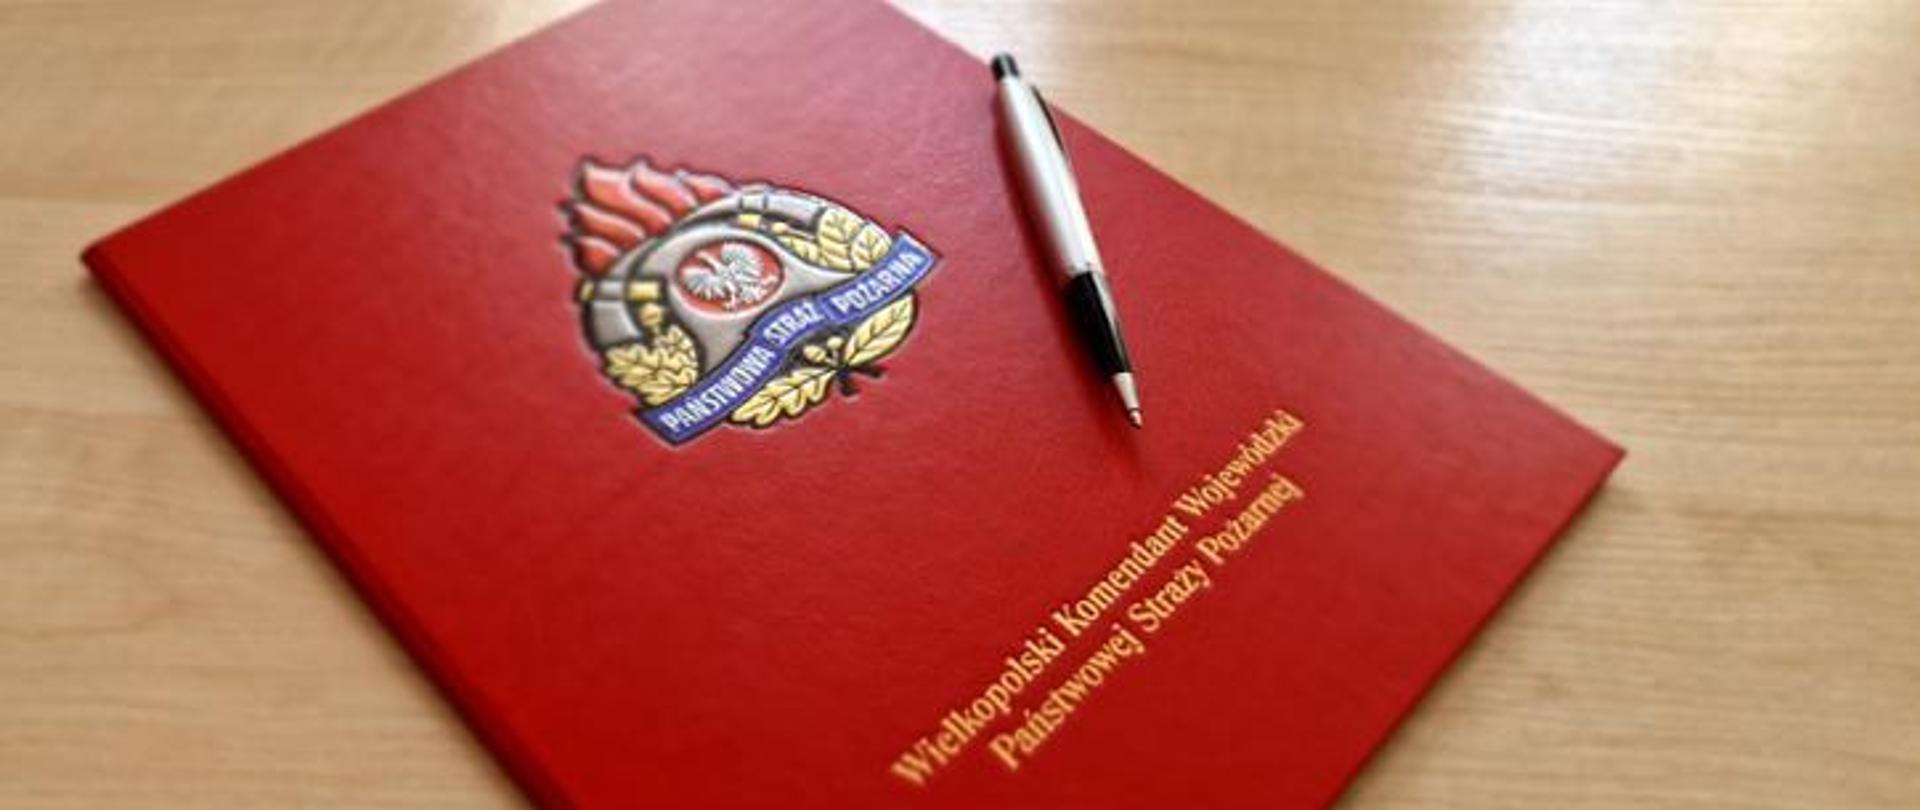 Zdjęcie przedstawia czerwoną teczkę na dokumenty z logiem PSP i napisem Wielkopolski Komendant Wojewódzki PSP